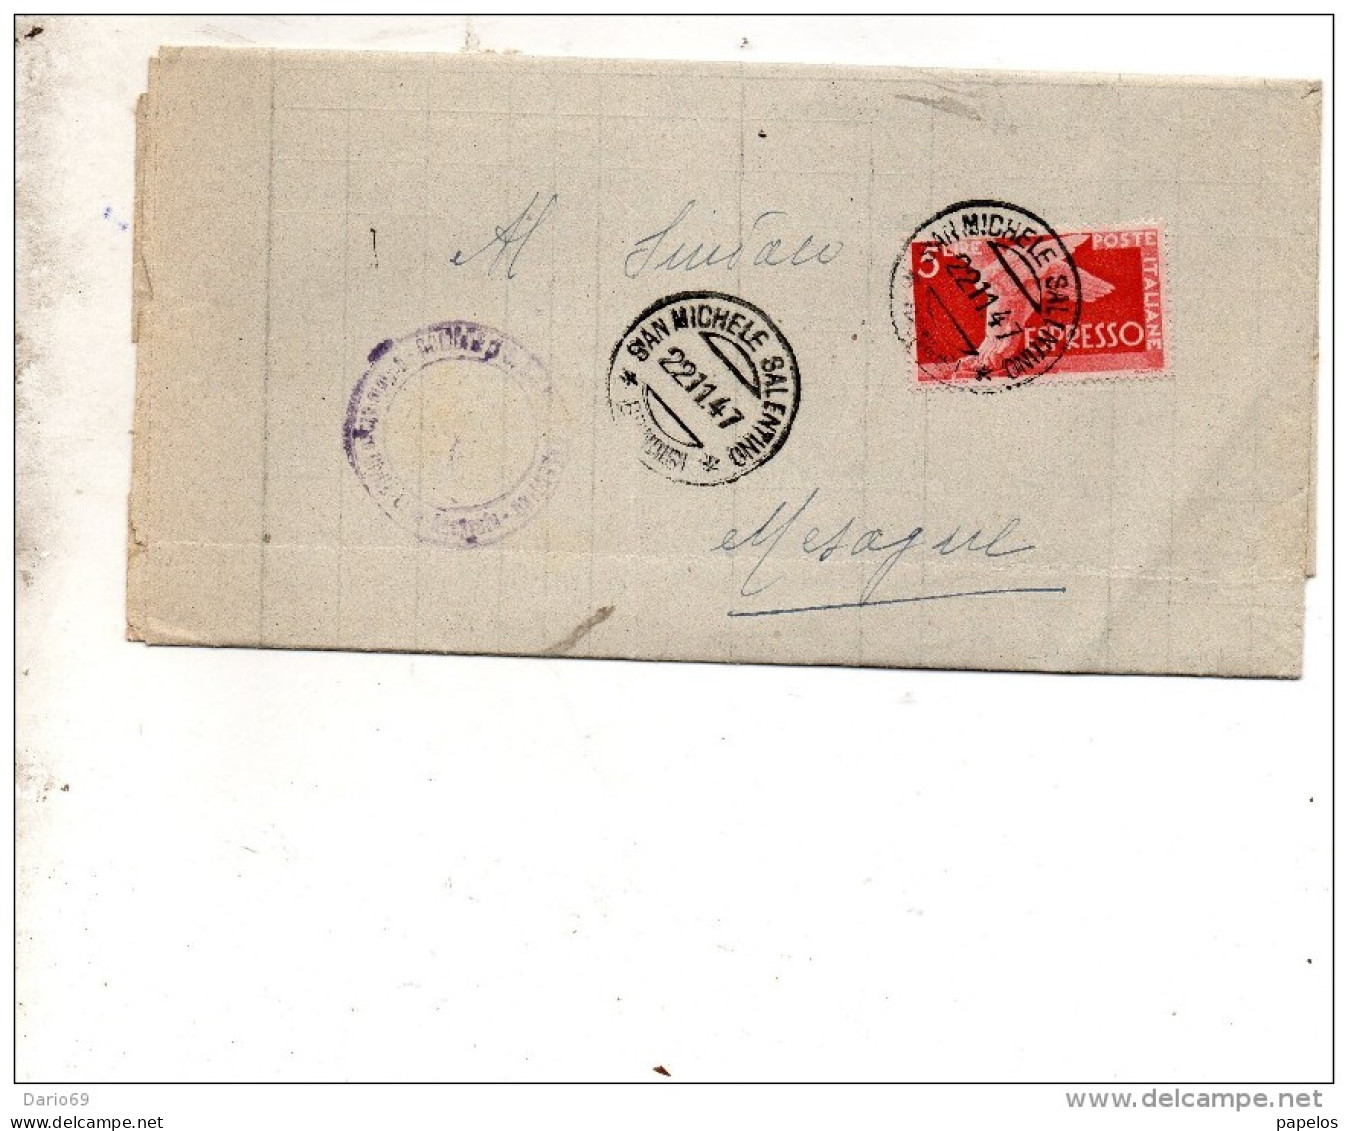 1947 LETTERA CON ANNULLO SAN MICHELE SALENTINO BRINDISI - Express/pneumatic Mail